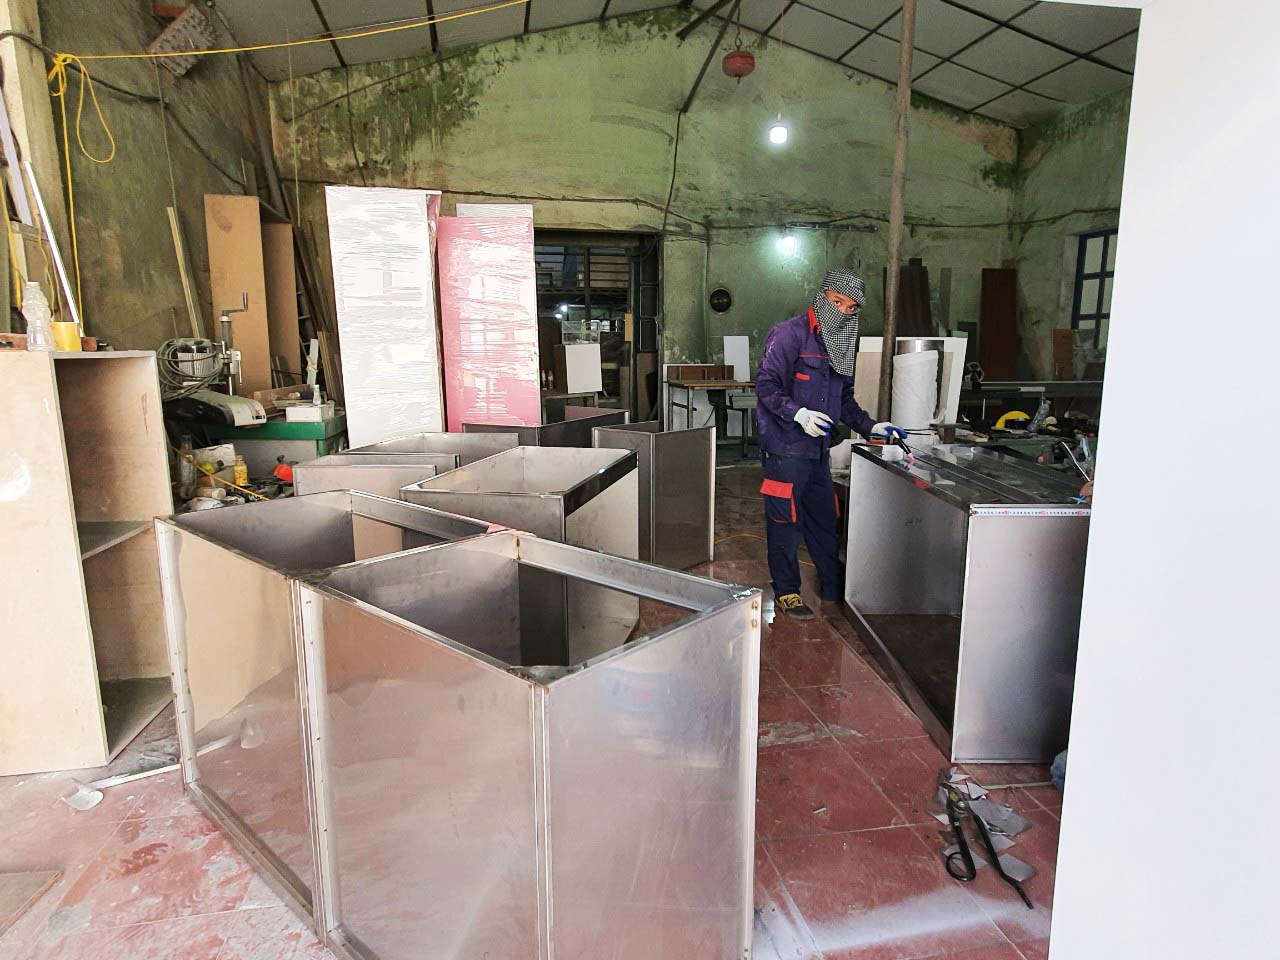 Thi công tủ bếp Inox tại Nội thất Hoàng Anh Ninh Bình